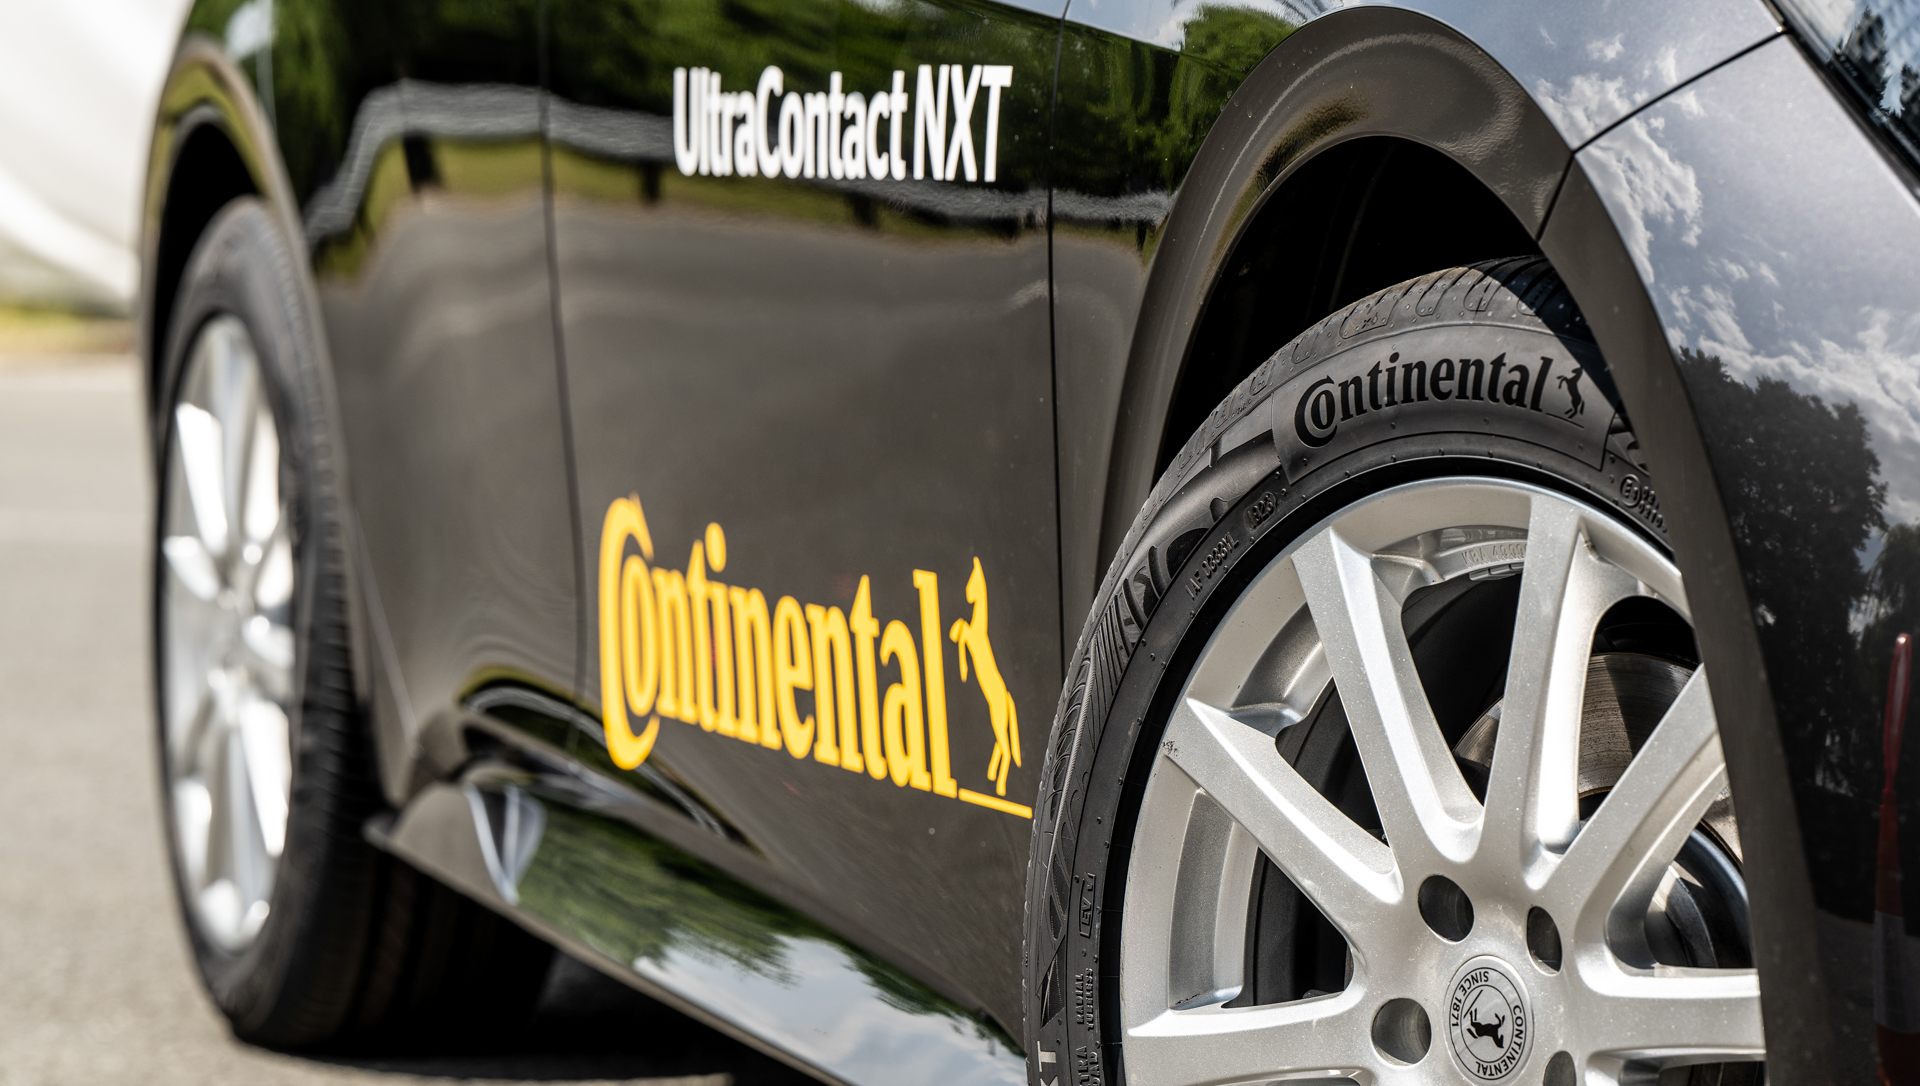 A Continental bemutatta eddigi legfenntarthatóbb gumiabroncsát | technokrata